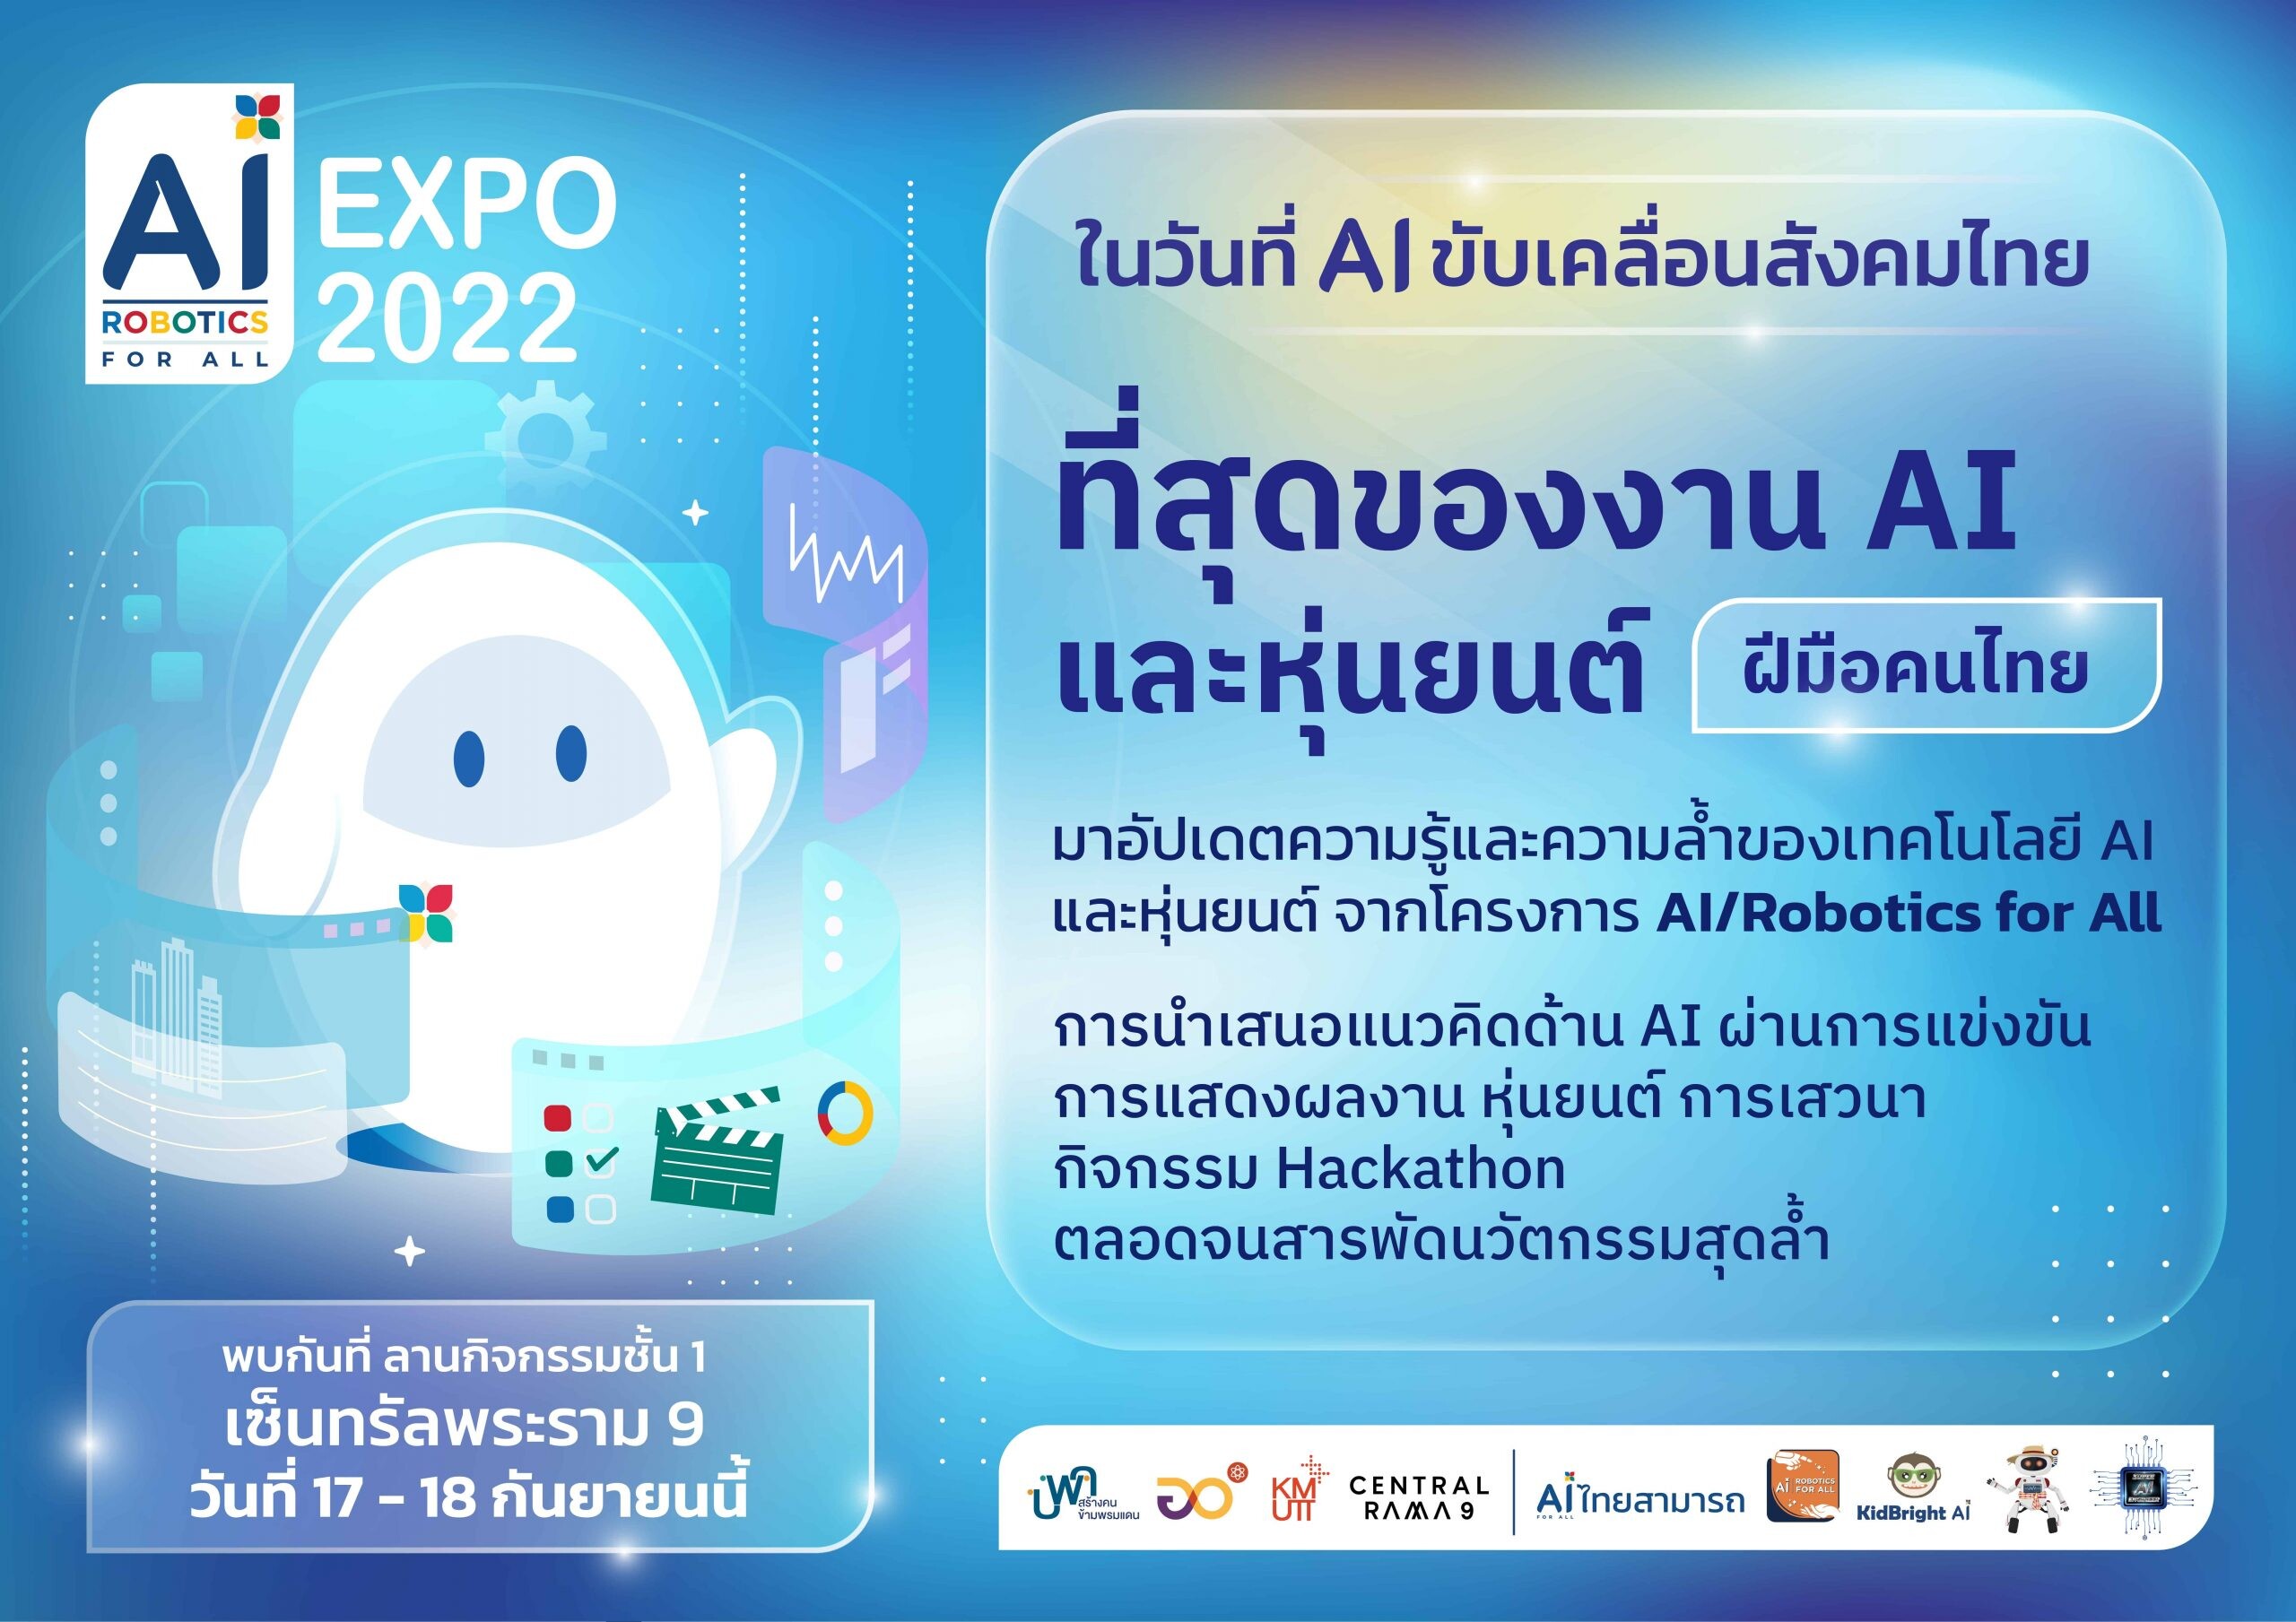 AI/Robotics for All จัดงาน AI Robotics for All Expo 2022 "ในวันที่ AI ขับเคลื่อนสังคมไทย"